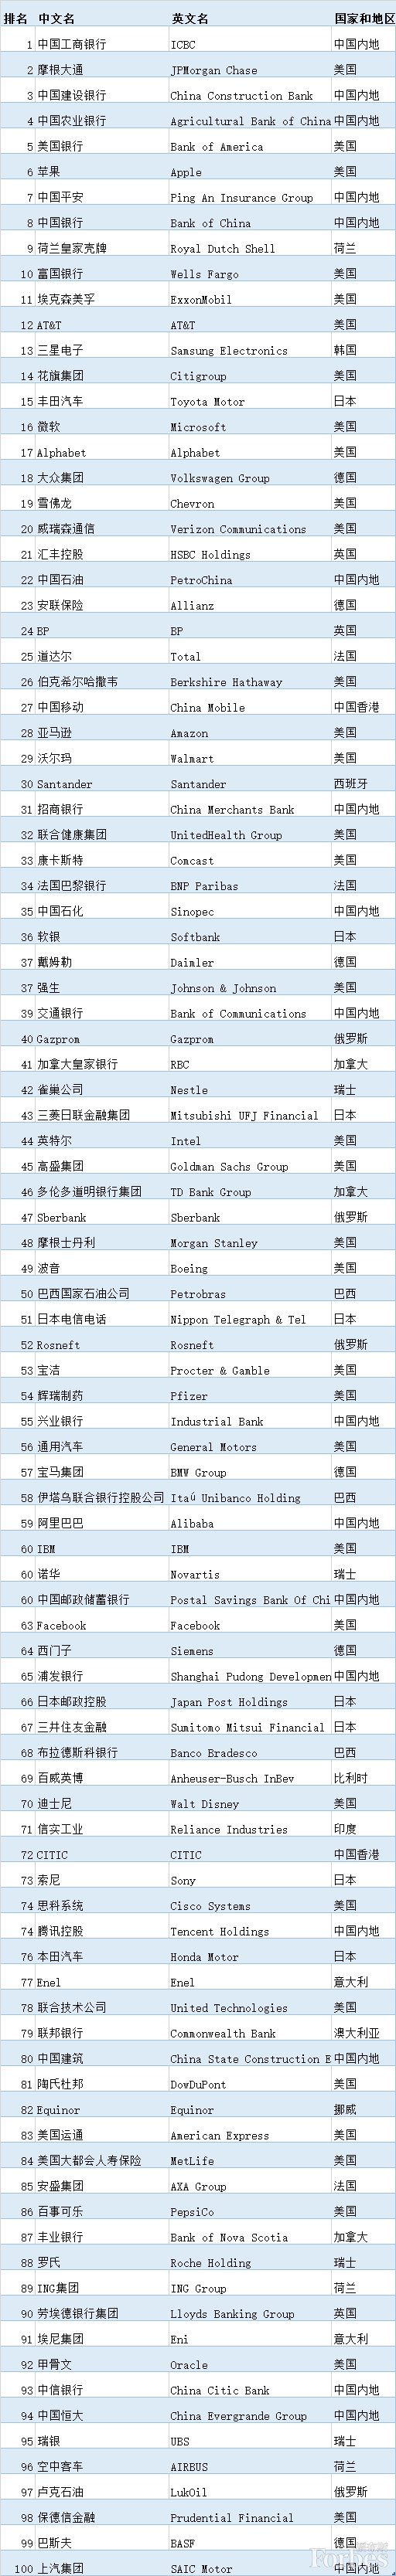 上榜！中国恒大位列福布斯2019全球企业第94